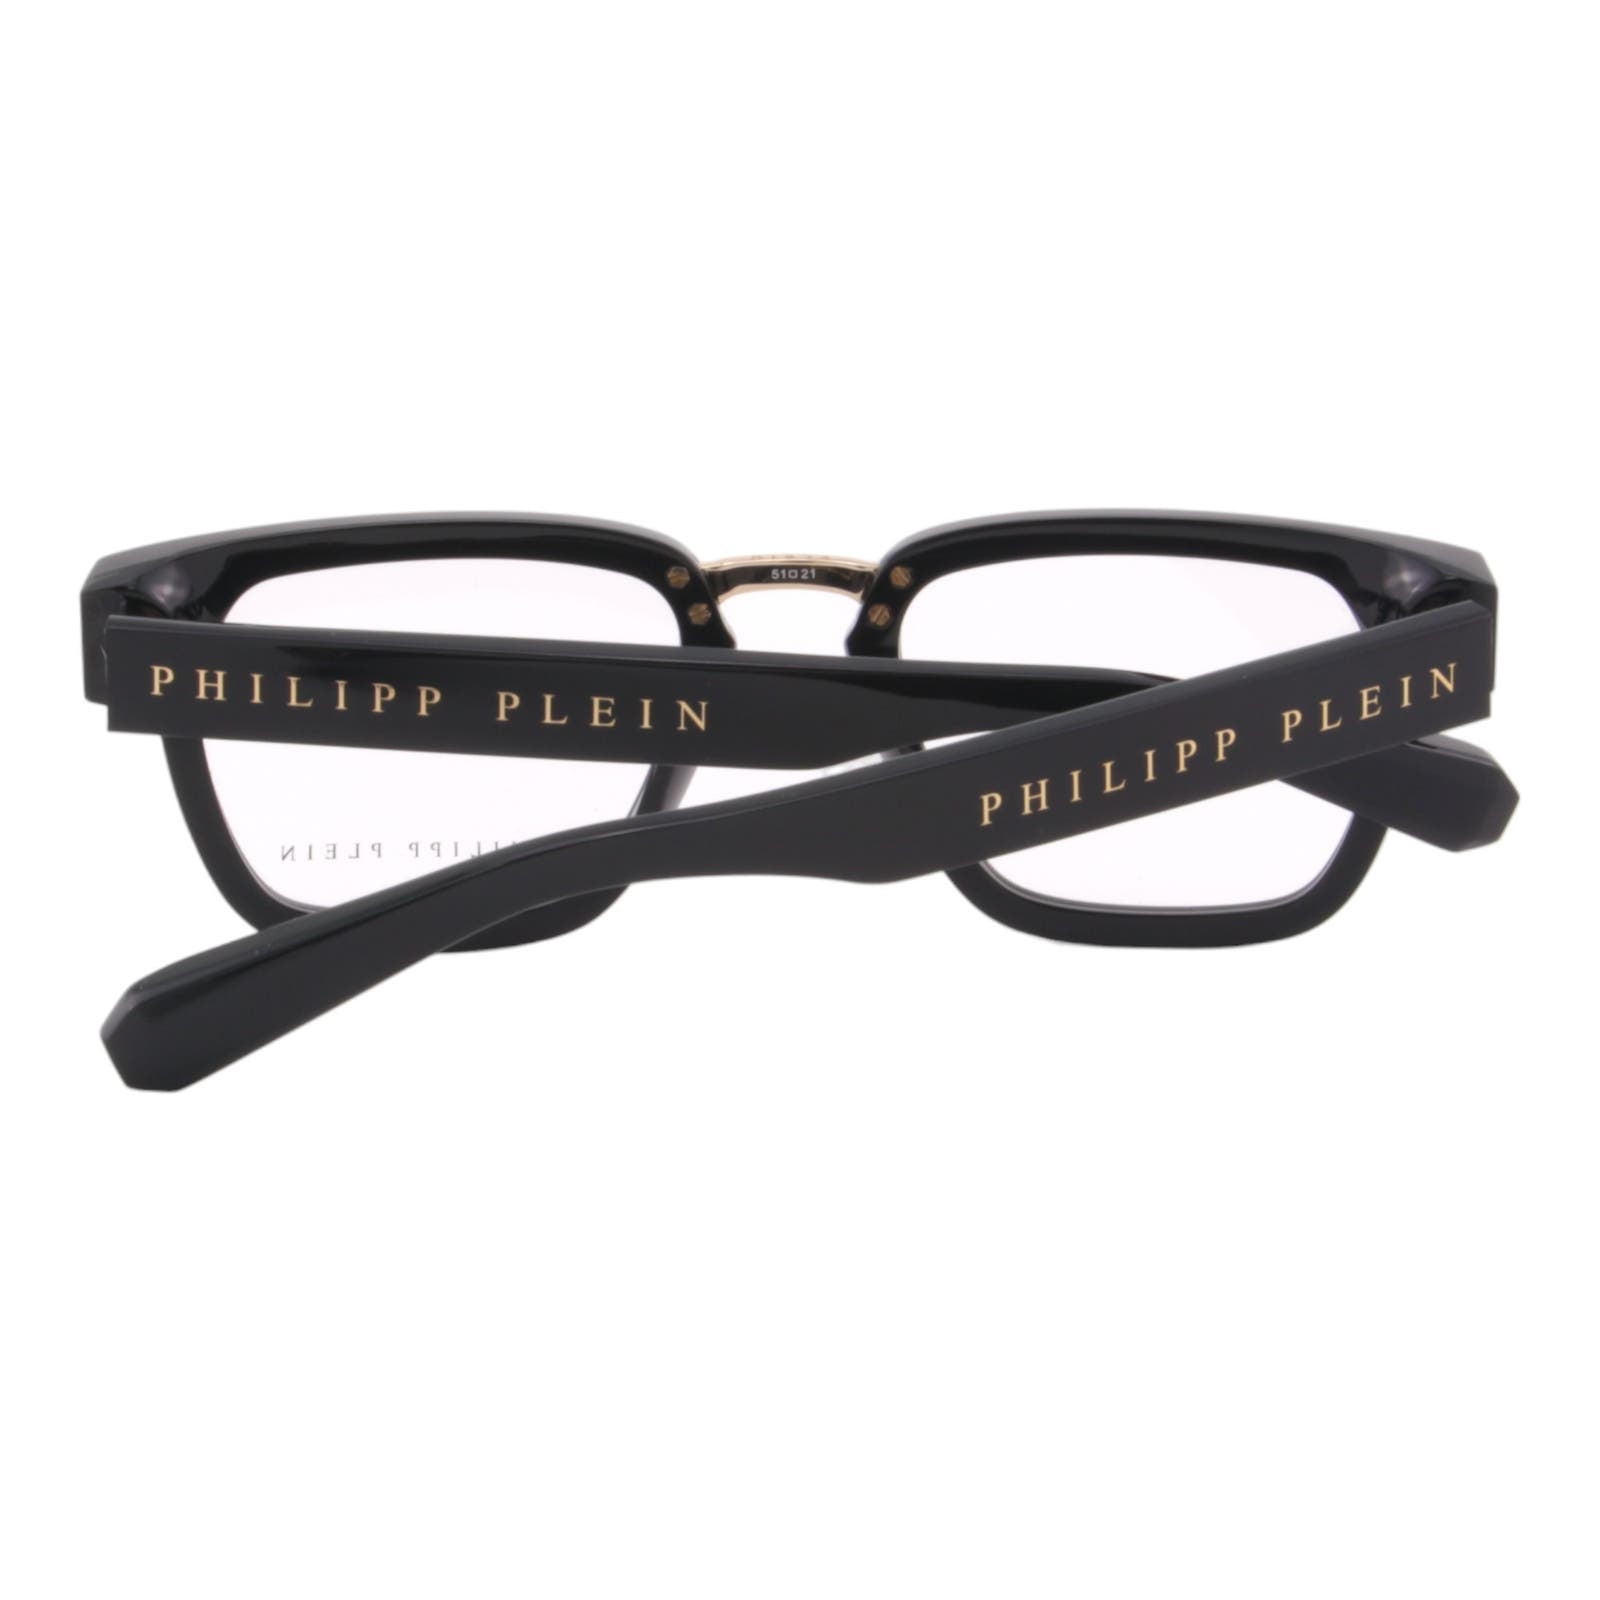 Men Glasses VPP055W-0700 Black & Gold Optical Square Frame